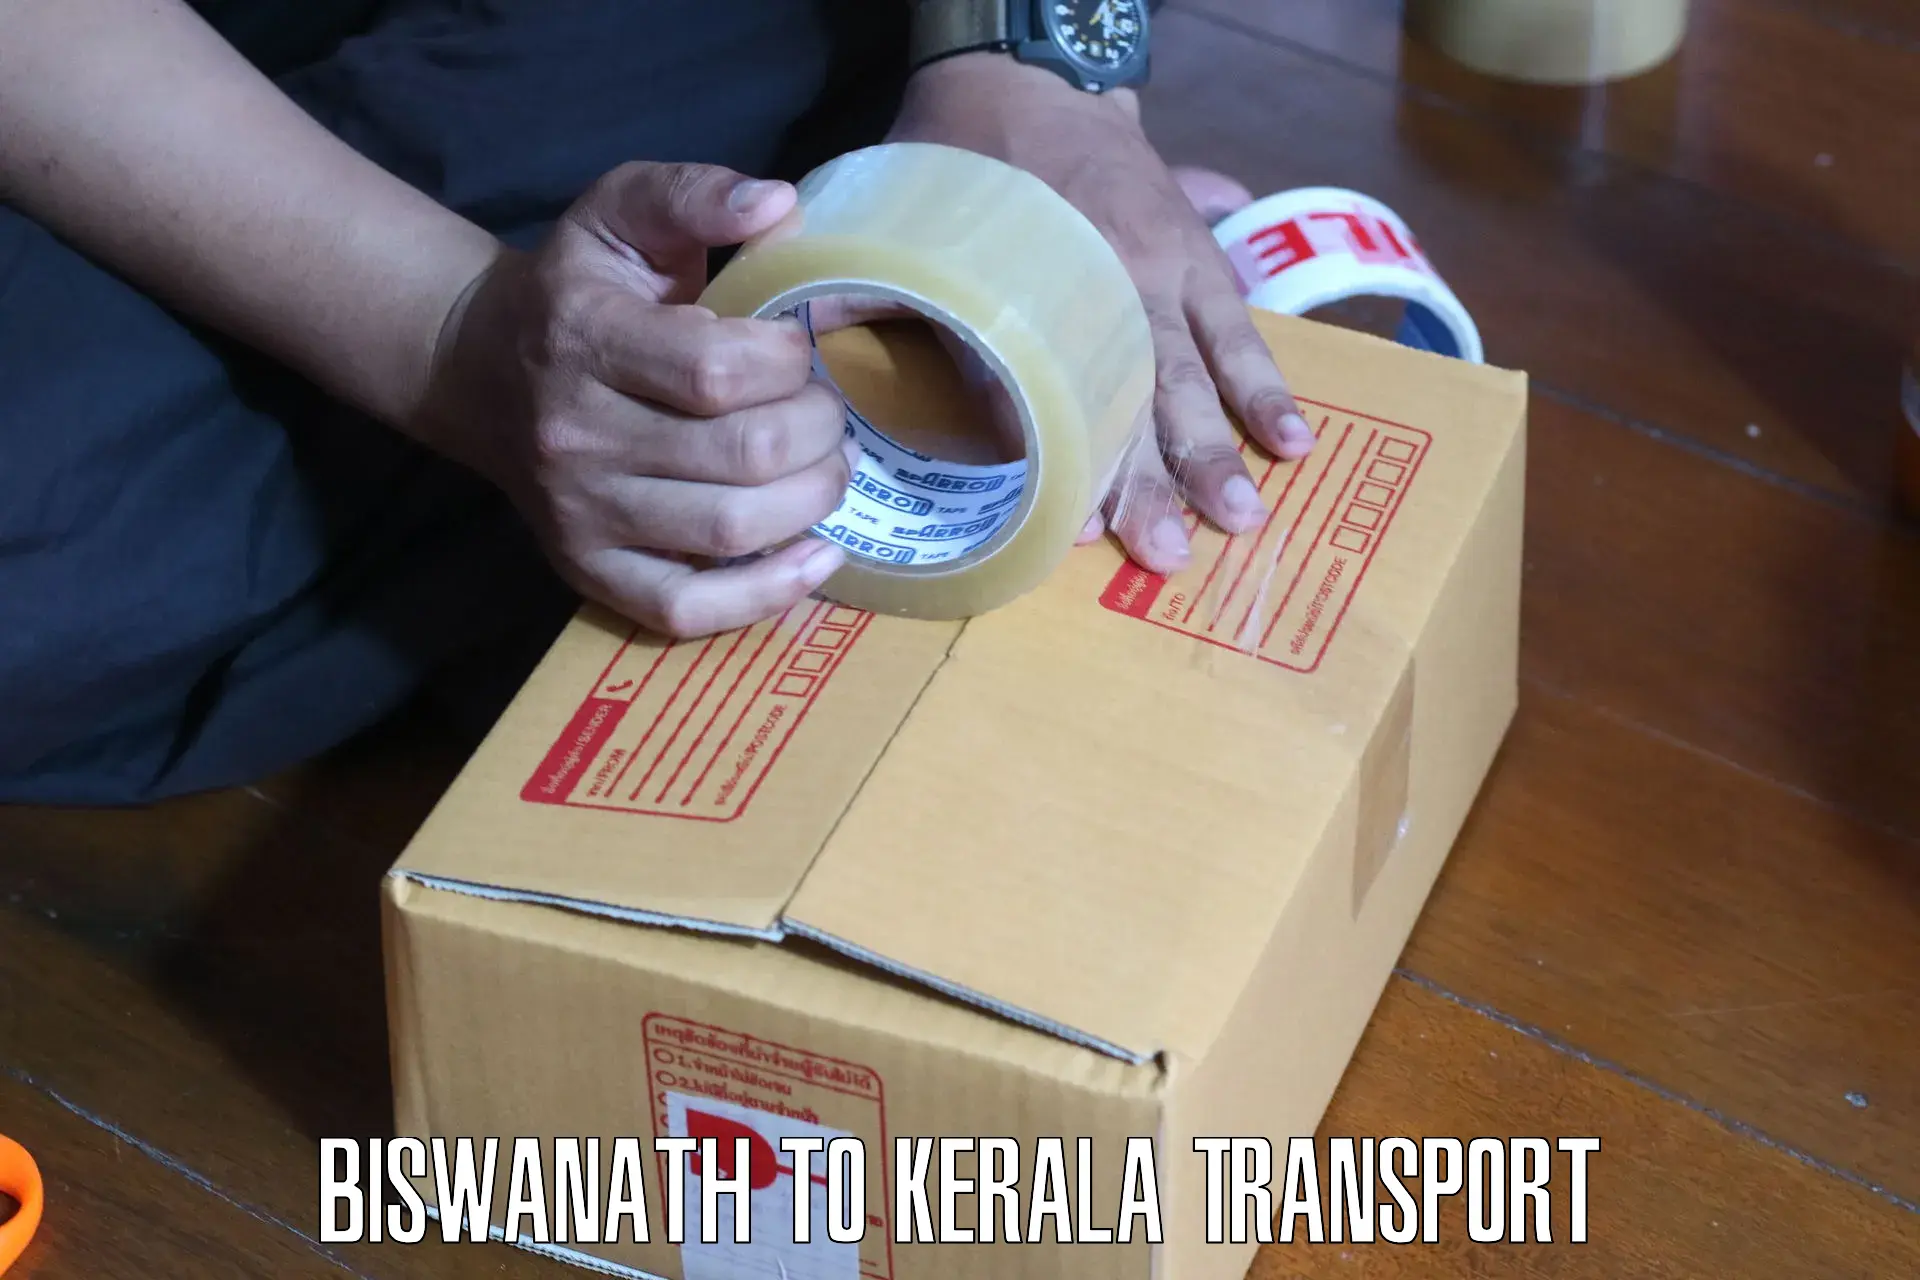 Online transport service Biswanath to Peravoor